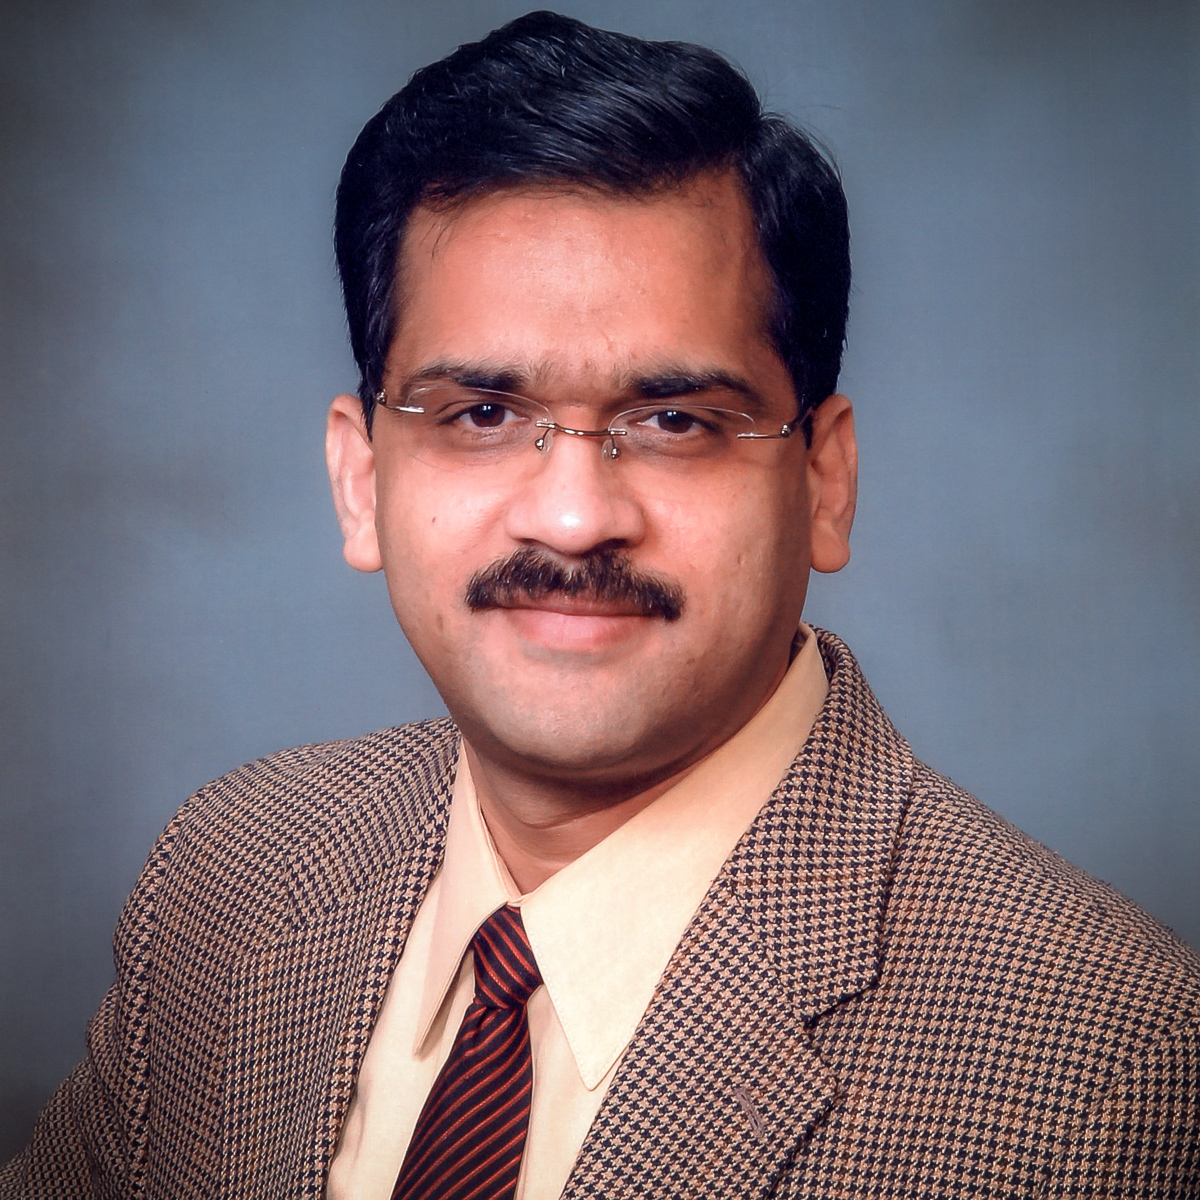 Dr. Rajendra Agrawal, Director, Division of Translational Medicine